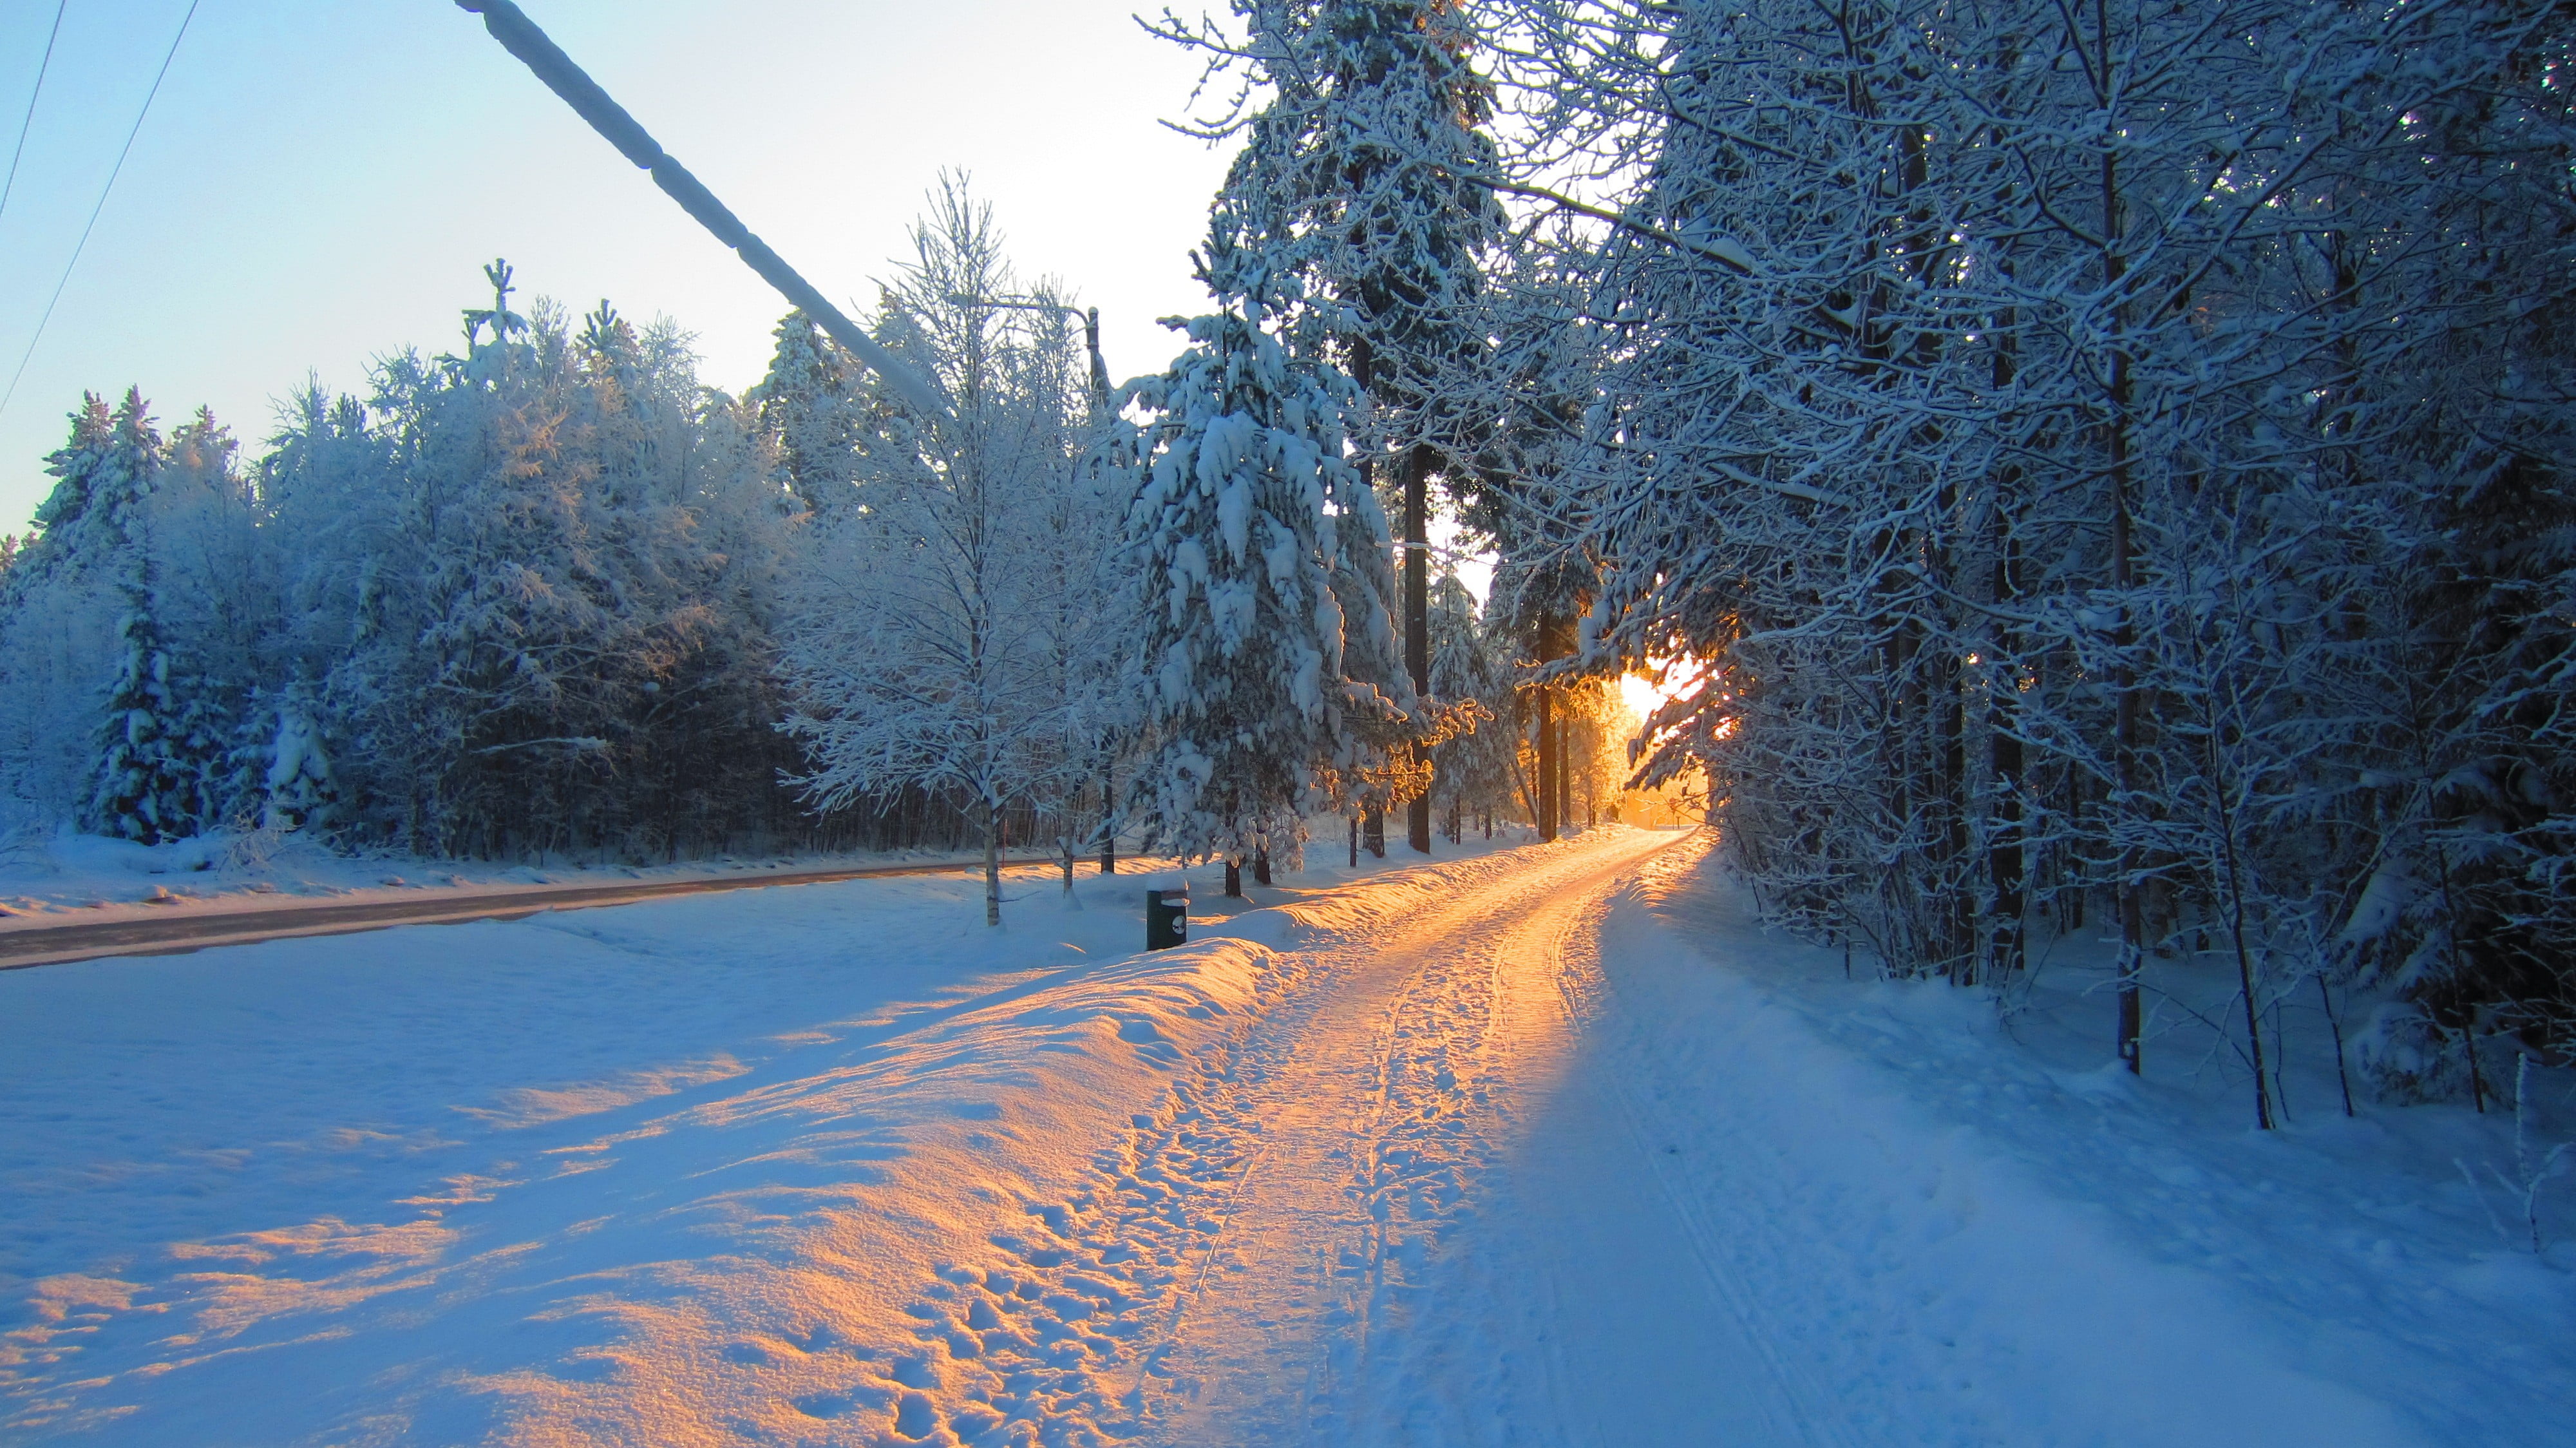 snow covered tree, landscape, road, Sun, sunlight, winter, cold temperature